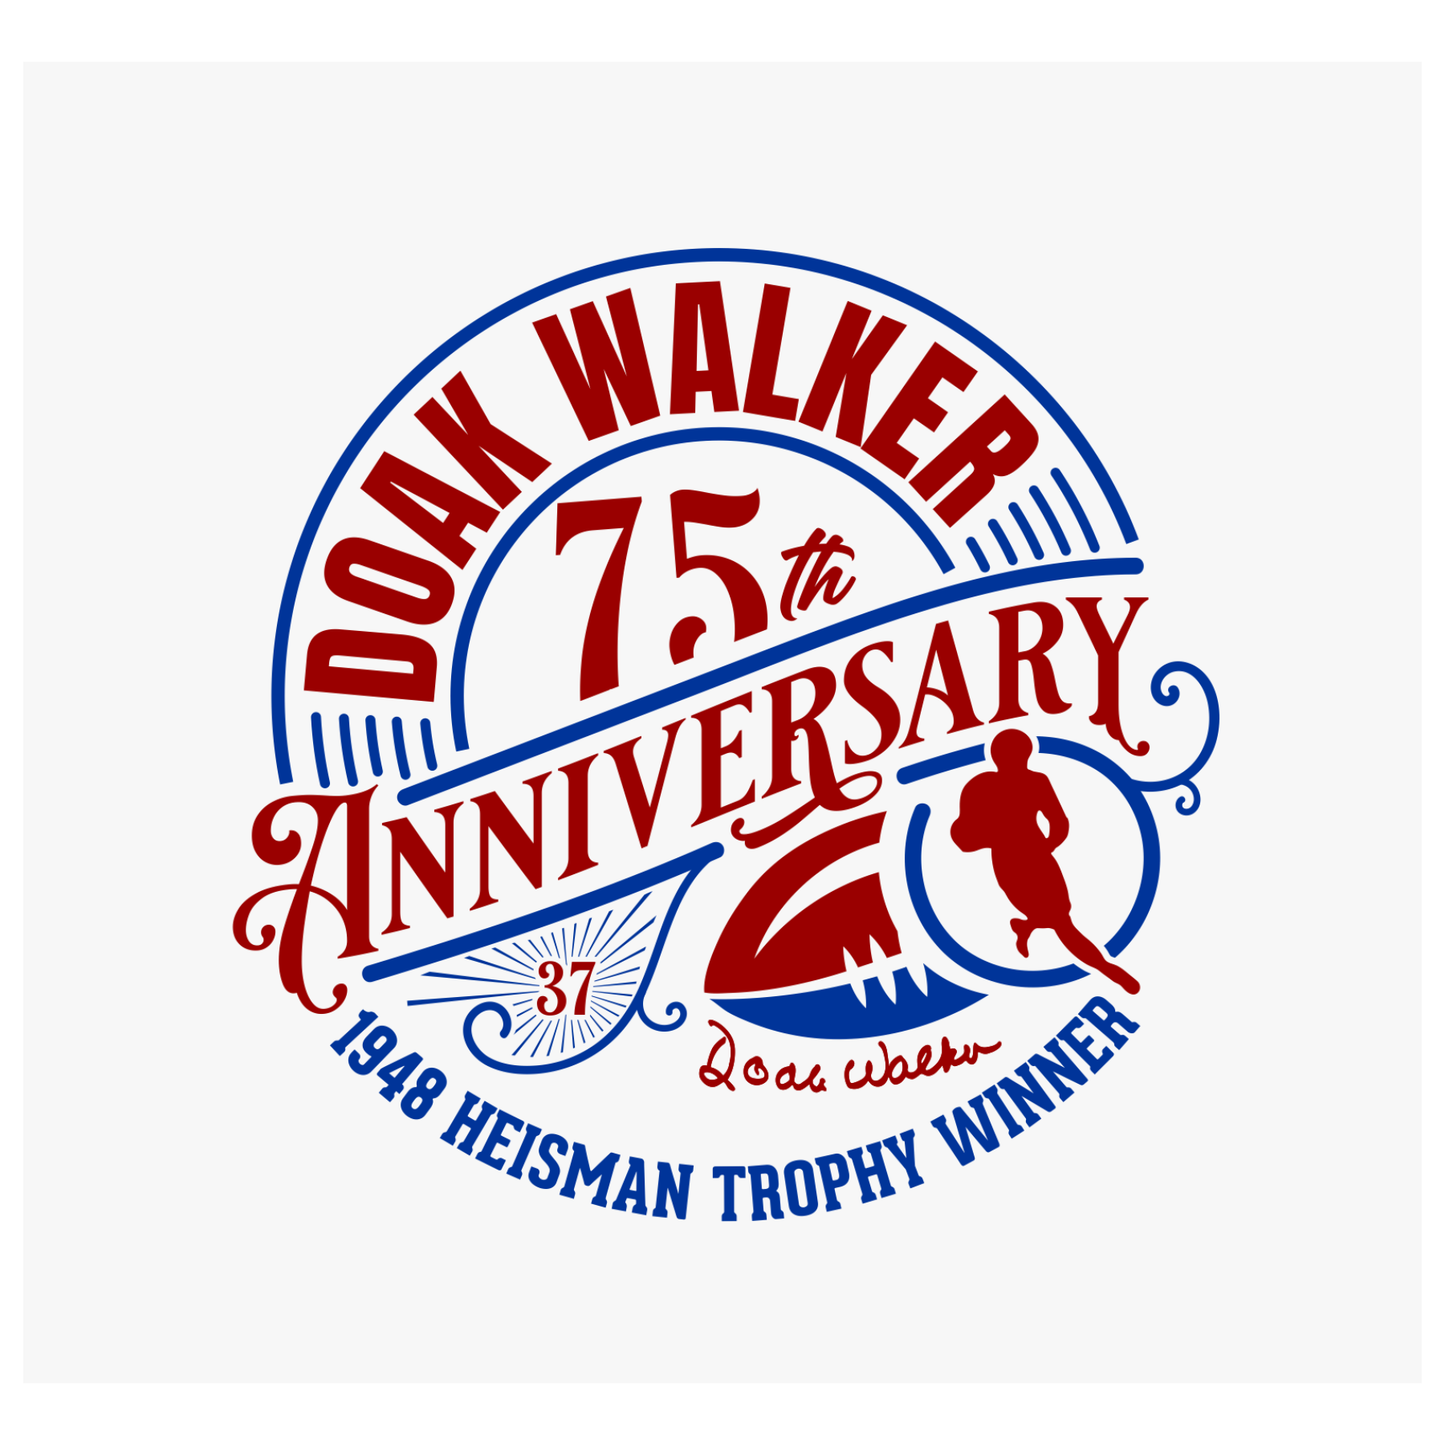 White Doak Walker 75th Anniversary T-Shirt